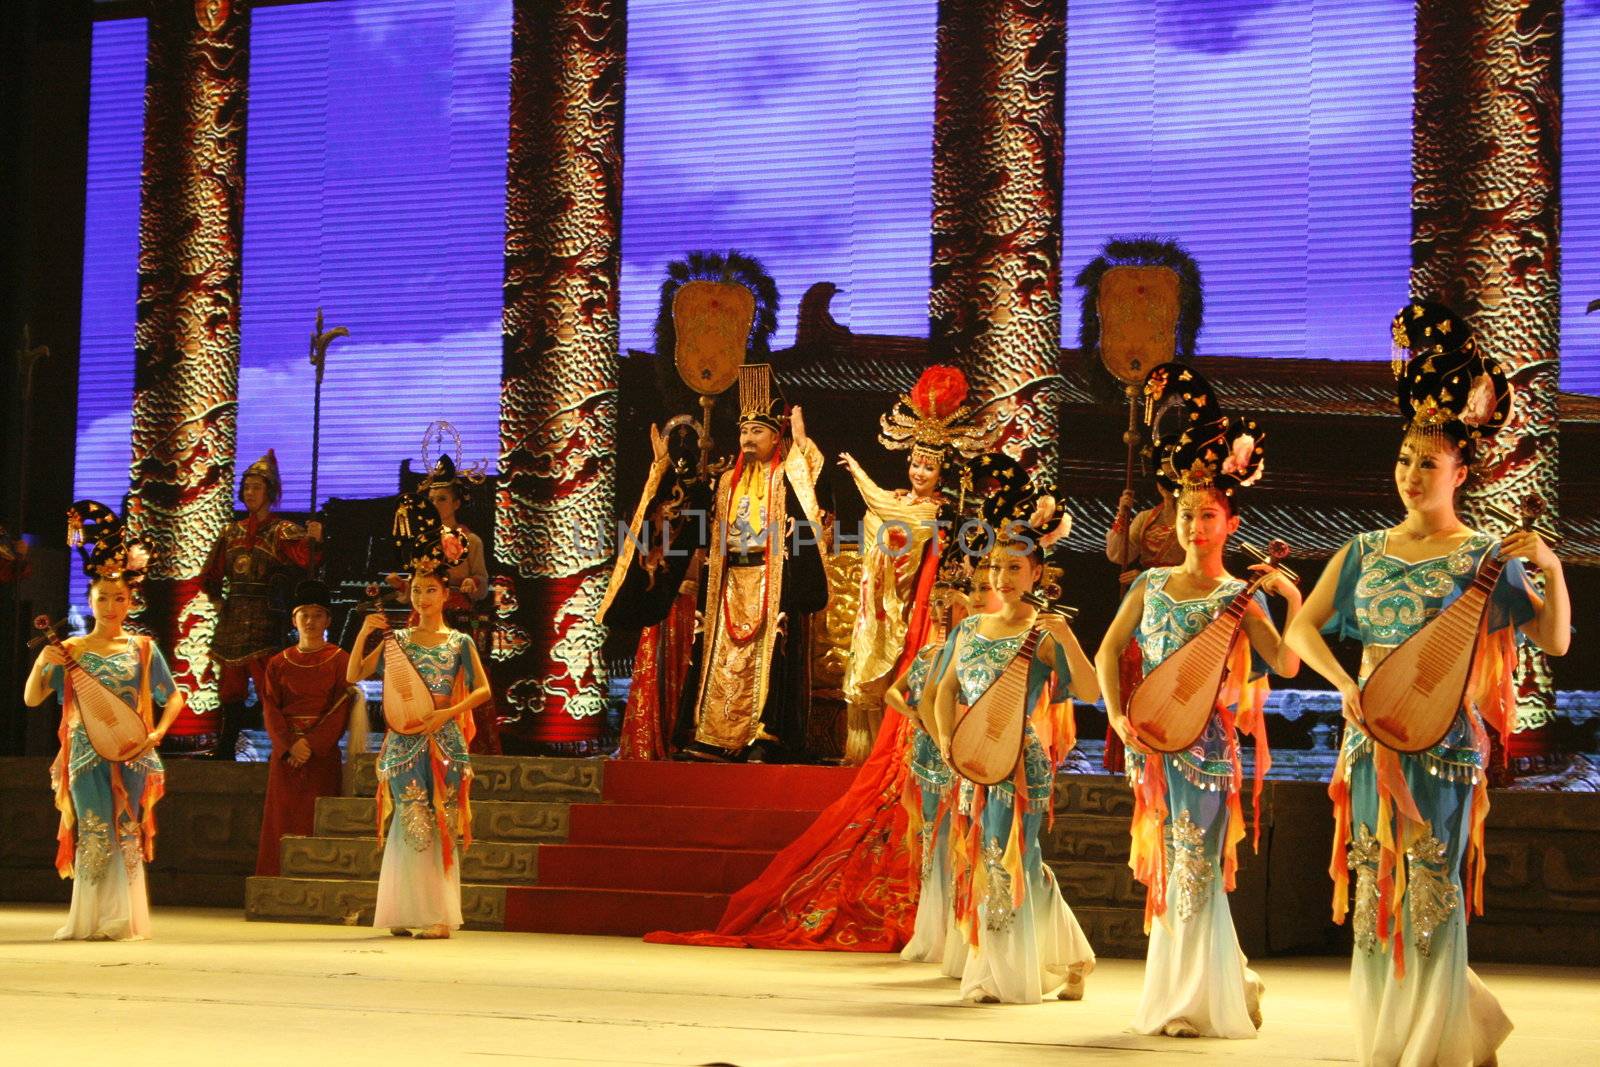 theatre of dancing in Xi'an / Xian, China